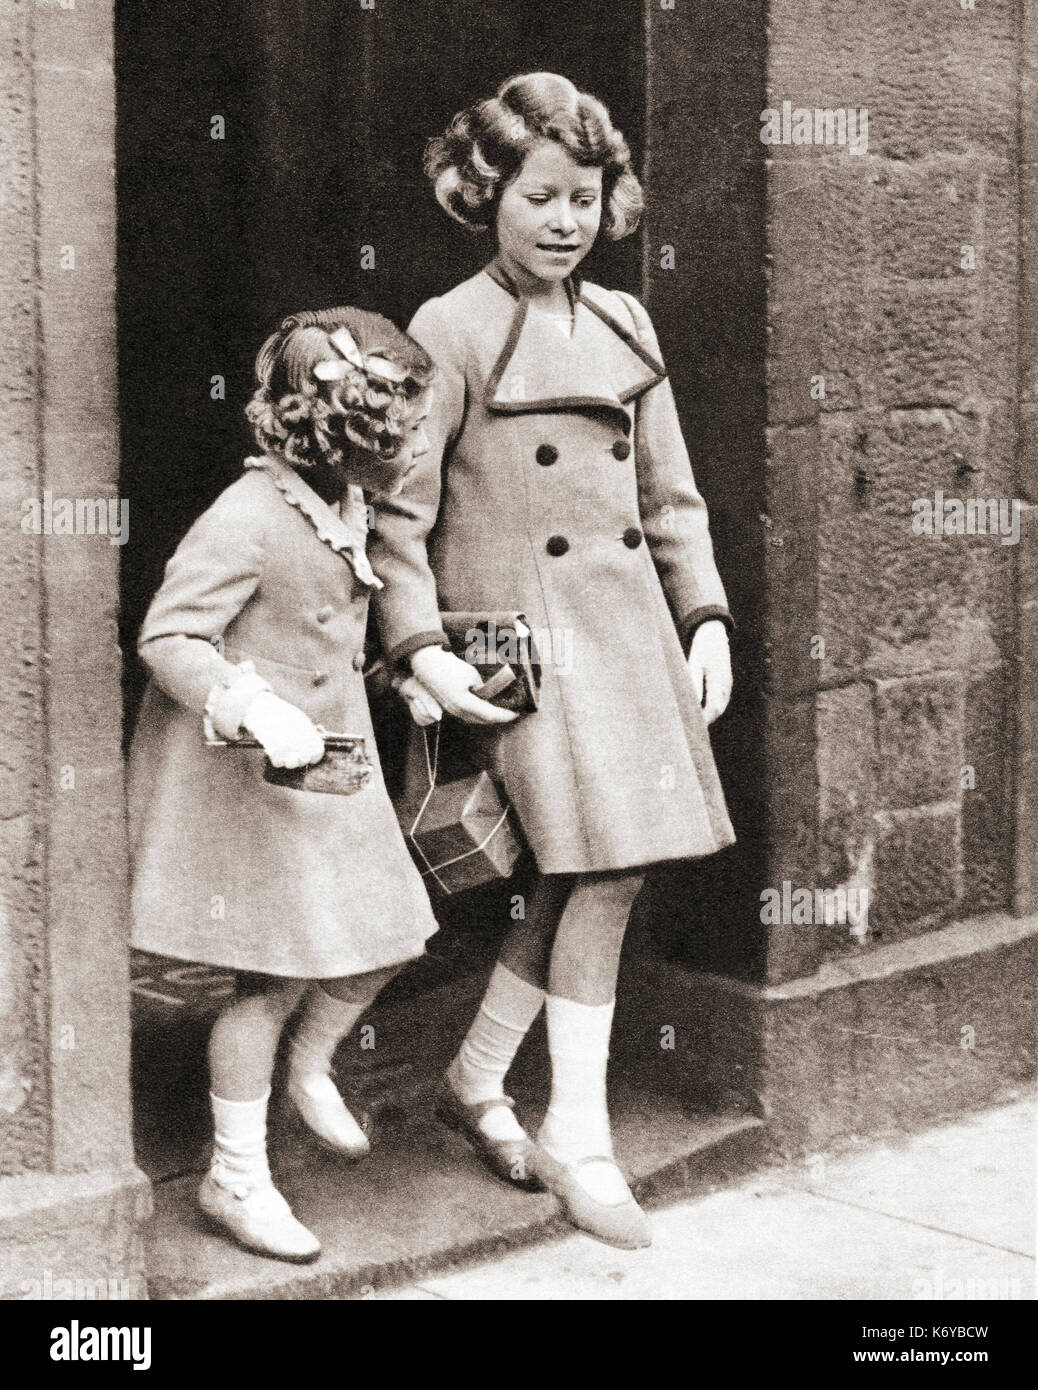 Prinzessin Elizabeth, rechts, und ihre Schwester Prinzessin Margaret im Jahr 1935. Prinzessin Elisabeth von York, zukünftige Elisabeth II.,1926 - 2022. Königin des Vereinigten Königreichs. Prinzessin Margaret, zukünftige Gräfin von Snowden, 1930 – 2002. Aus dem Krönungsbuch von König Georg VI. Und Königin Elisabeth, veröffentlicht 1937. Stockfoto